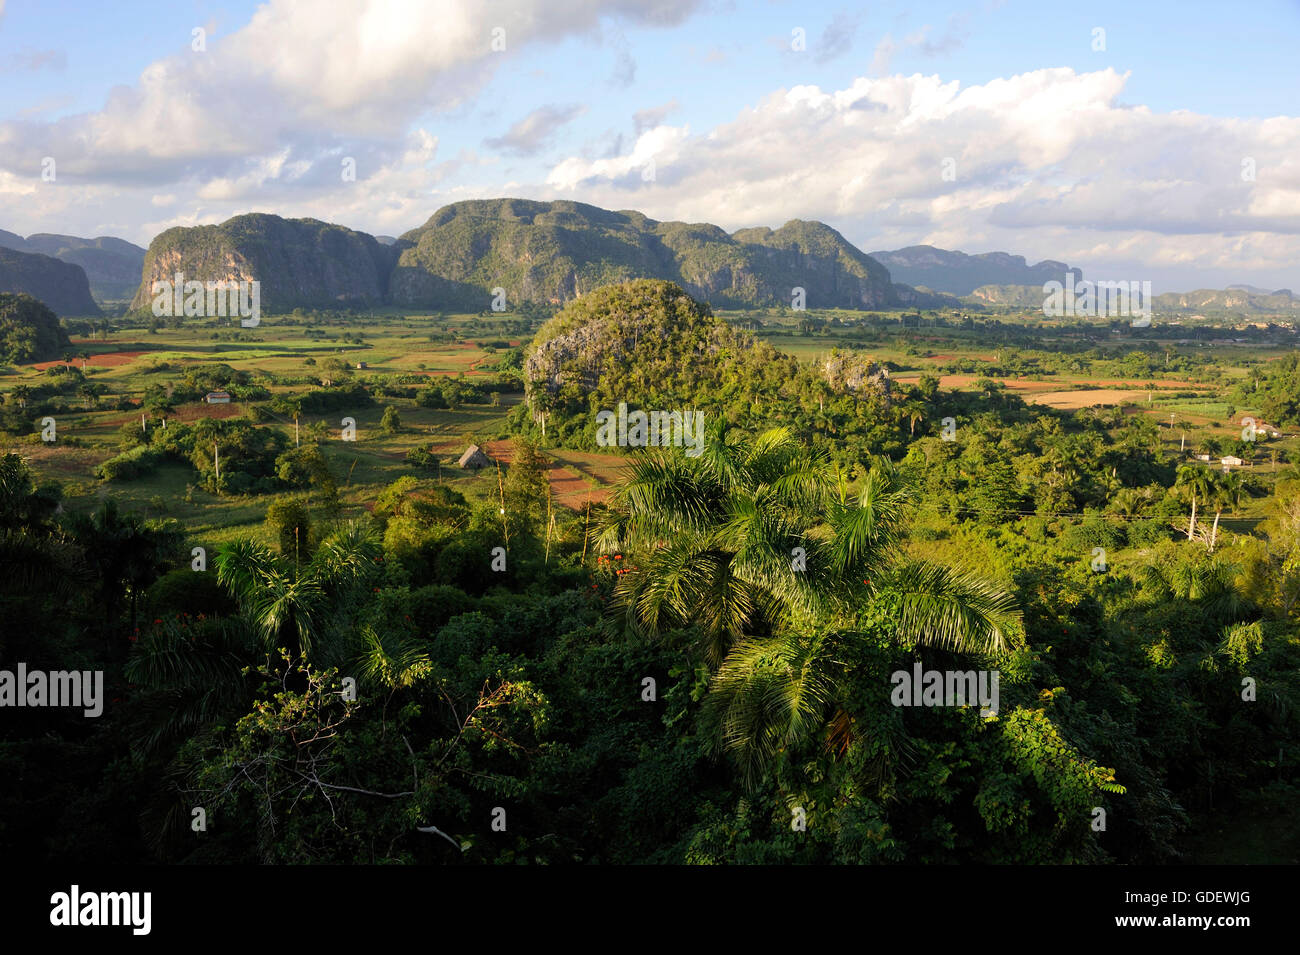 Vinales valley, Sierra del Rosario, Cuba Stock Photo